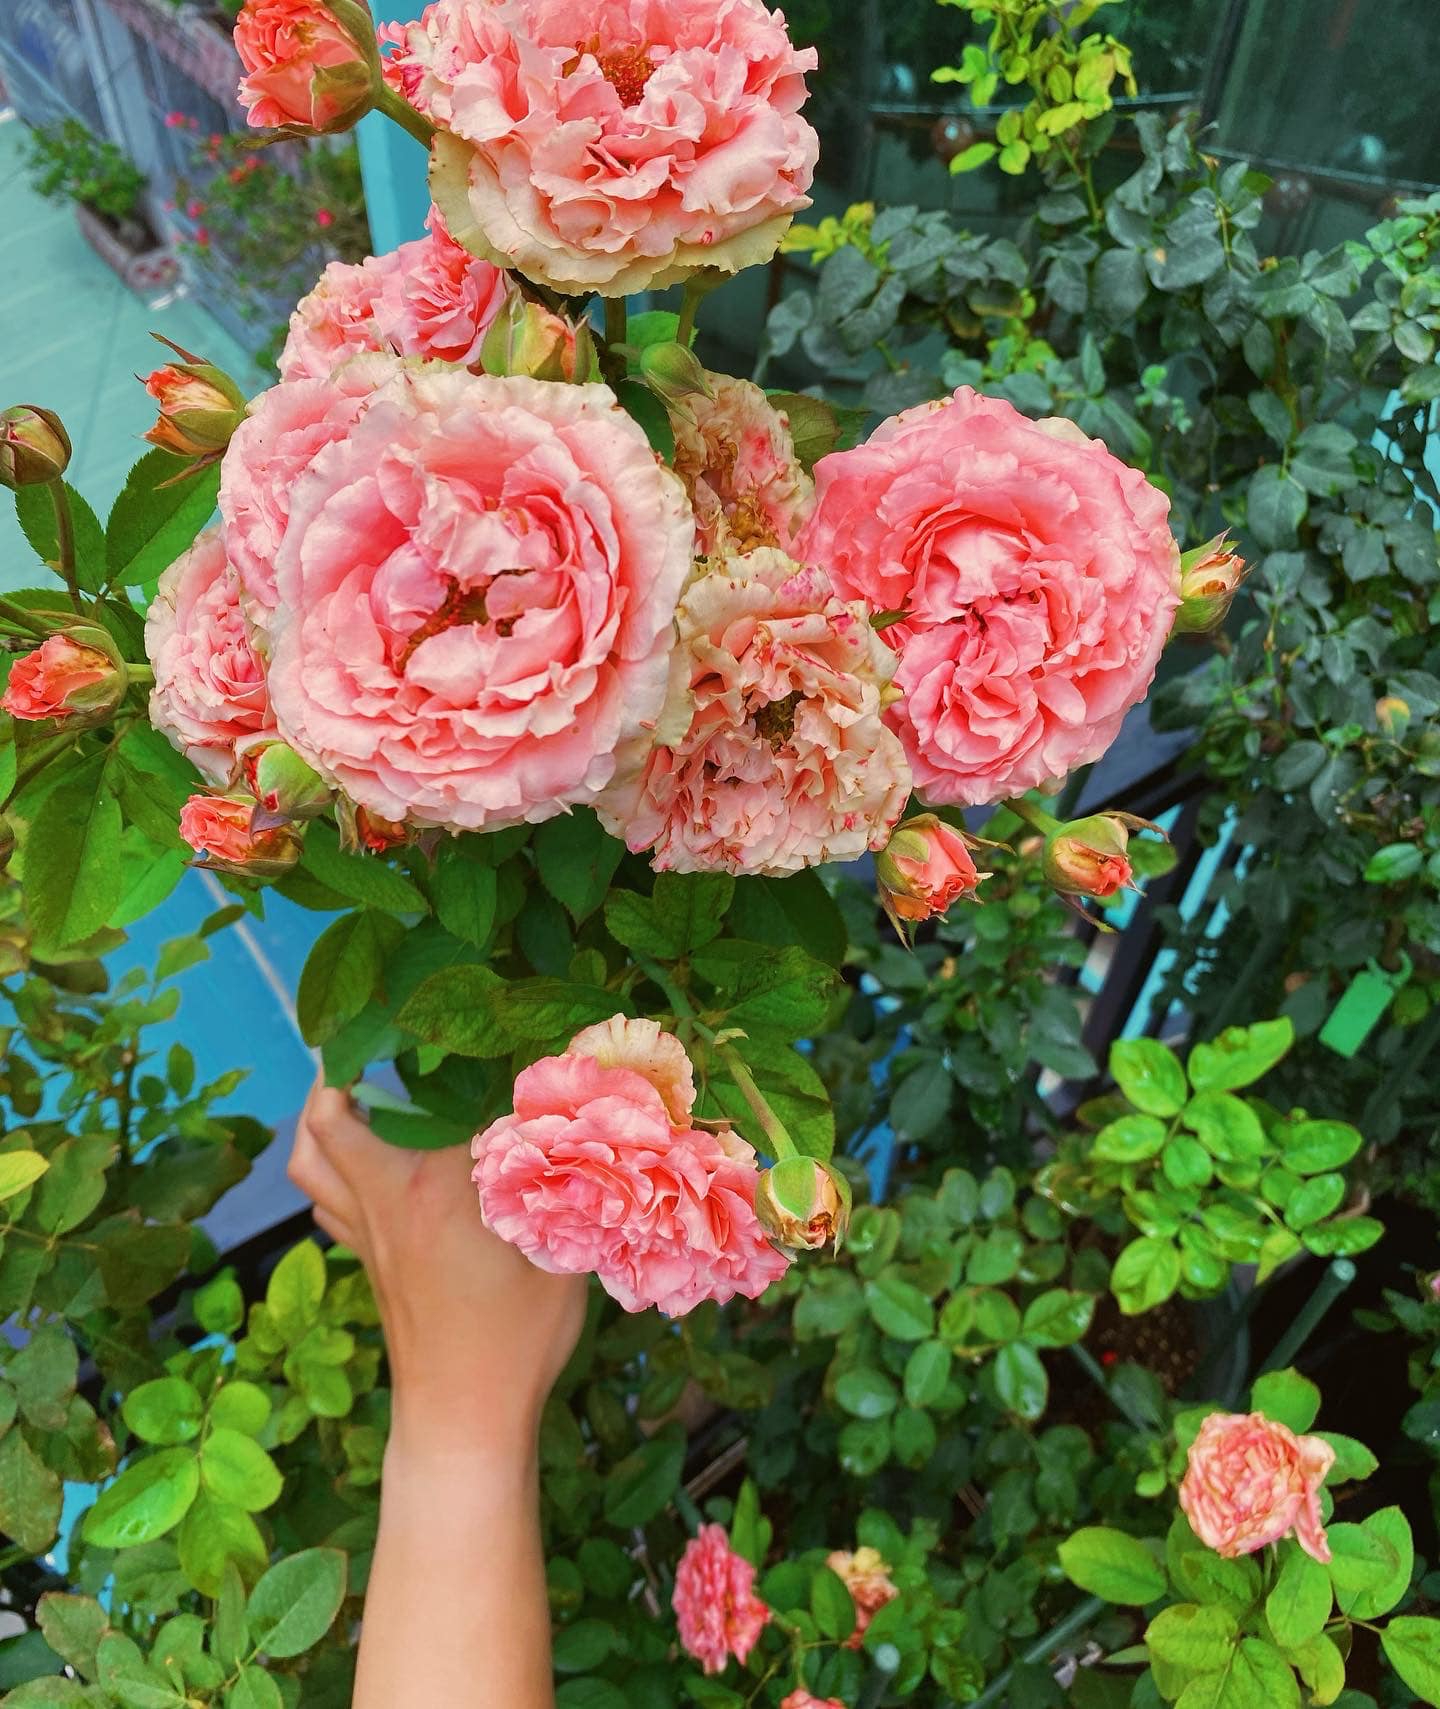 Vườn hoa hồng ngoại đẹp ngây ngất trên sân thượng giữa Sài thành của trai đẹp Sài Gòn - Ảnh 12.